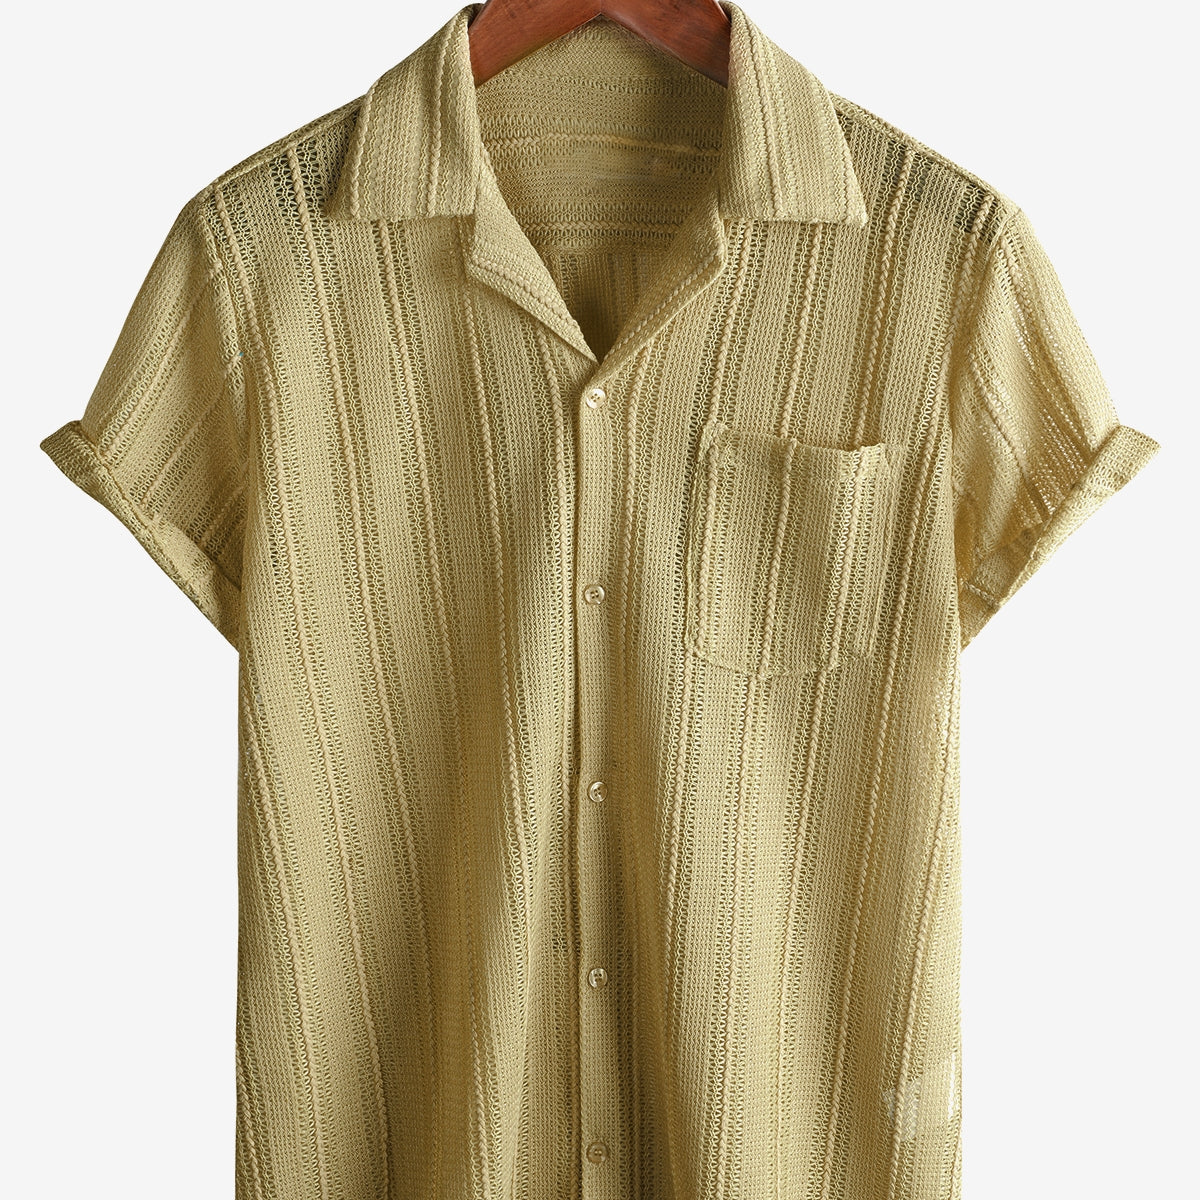 Chemise d'été en dentelle à manches courtes pour hommes, décontractée avec boutons, idéale pour la plage